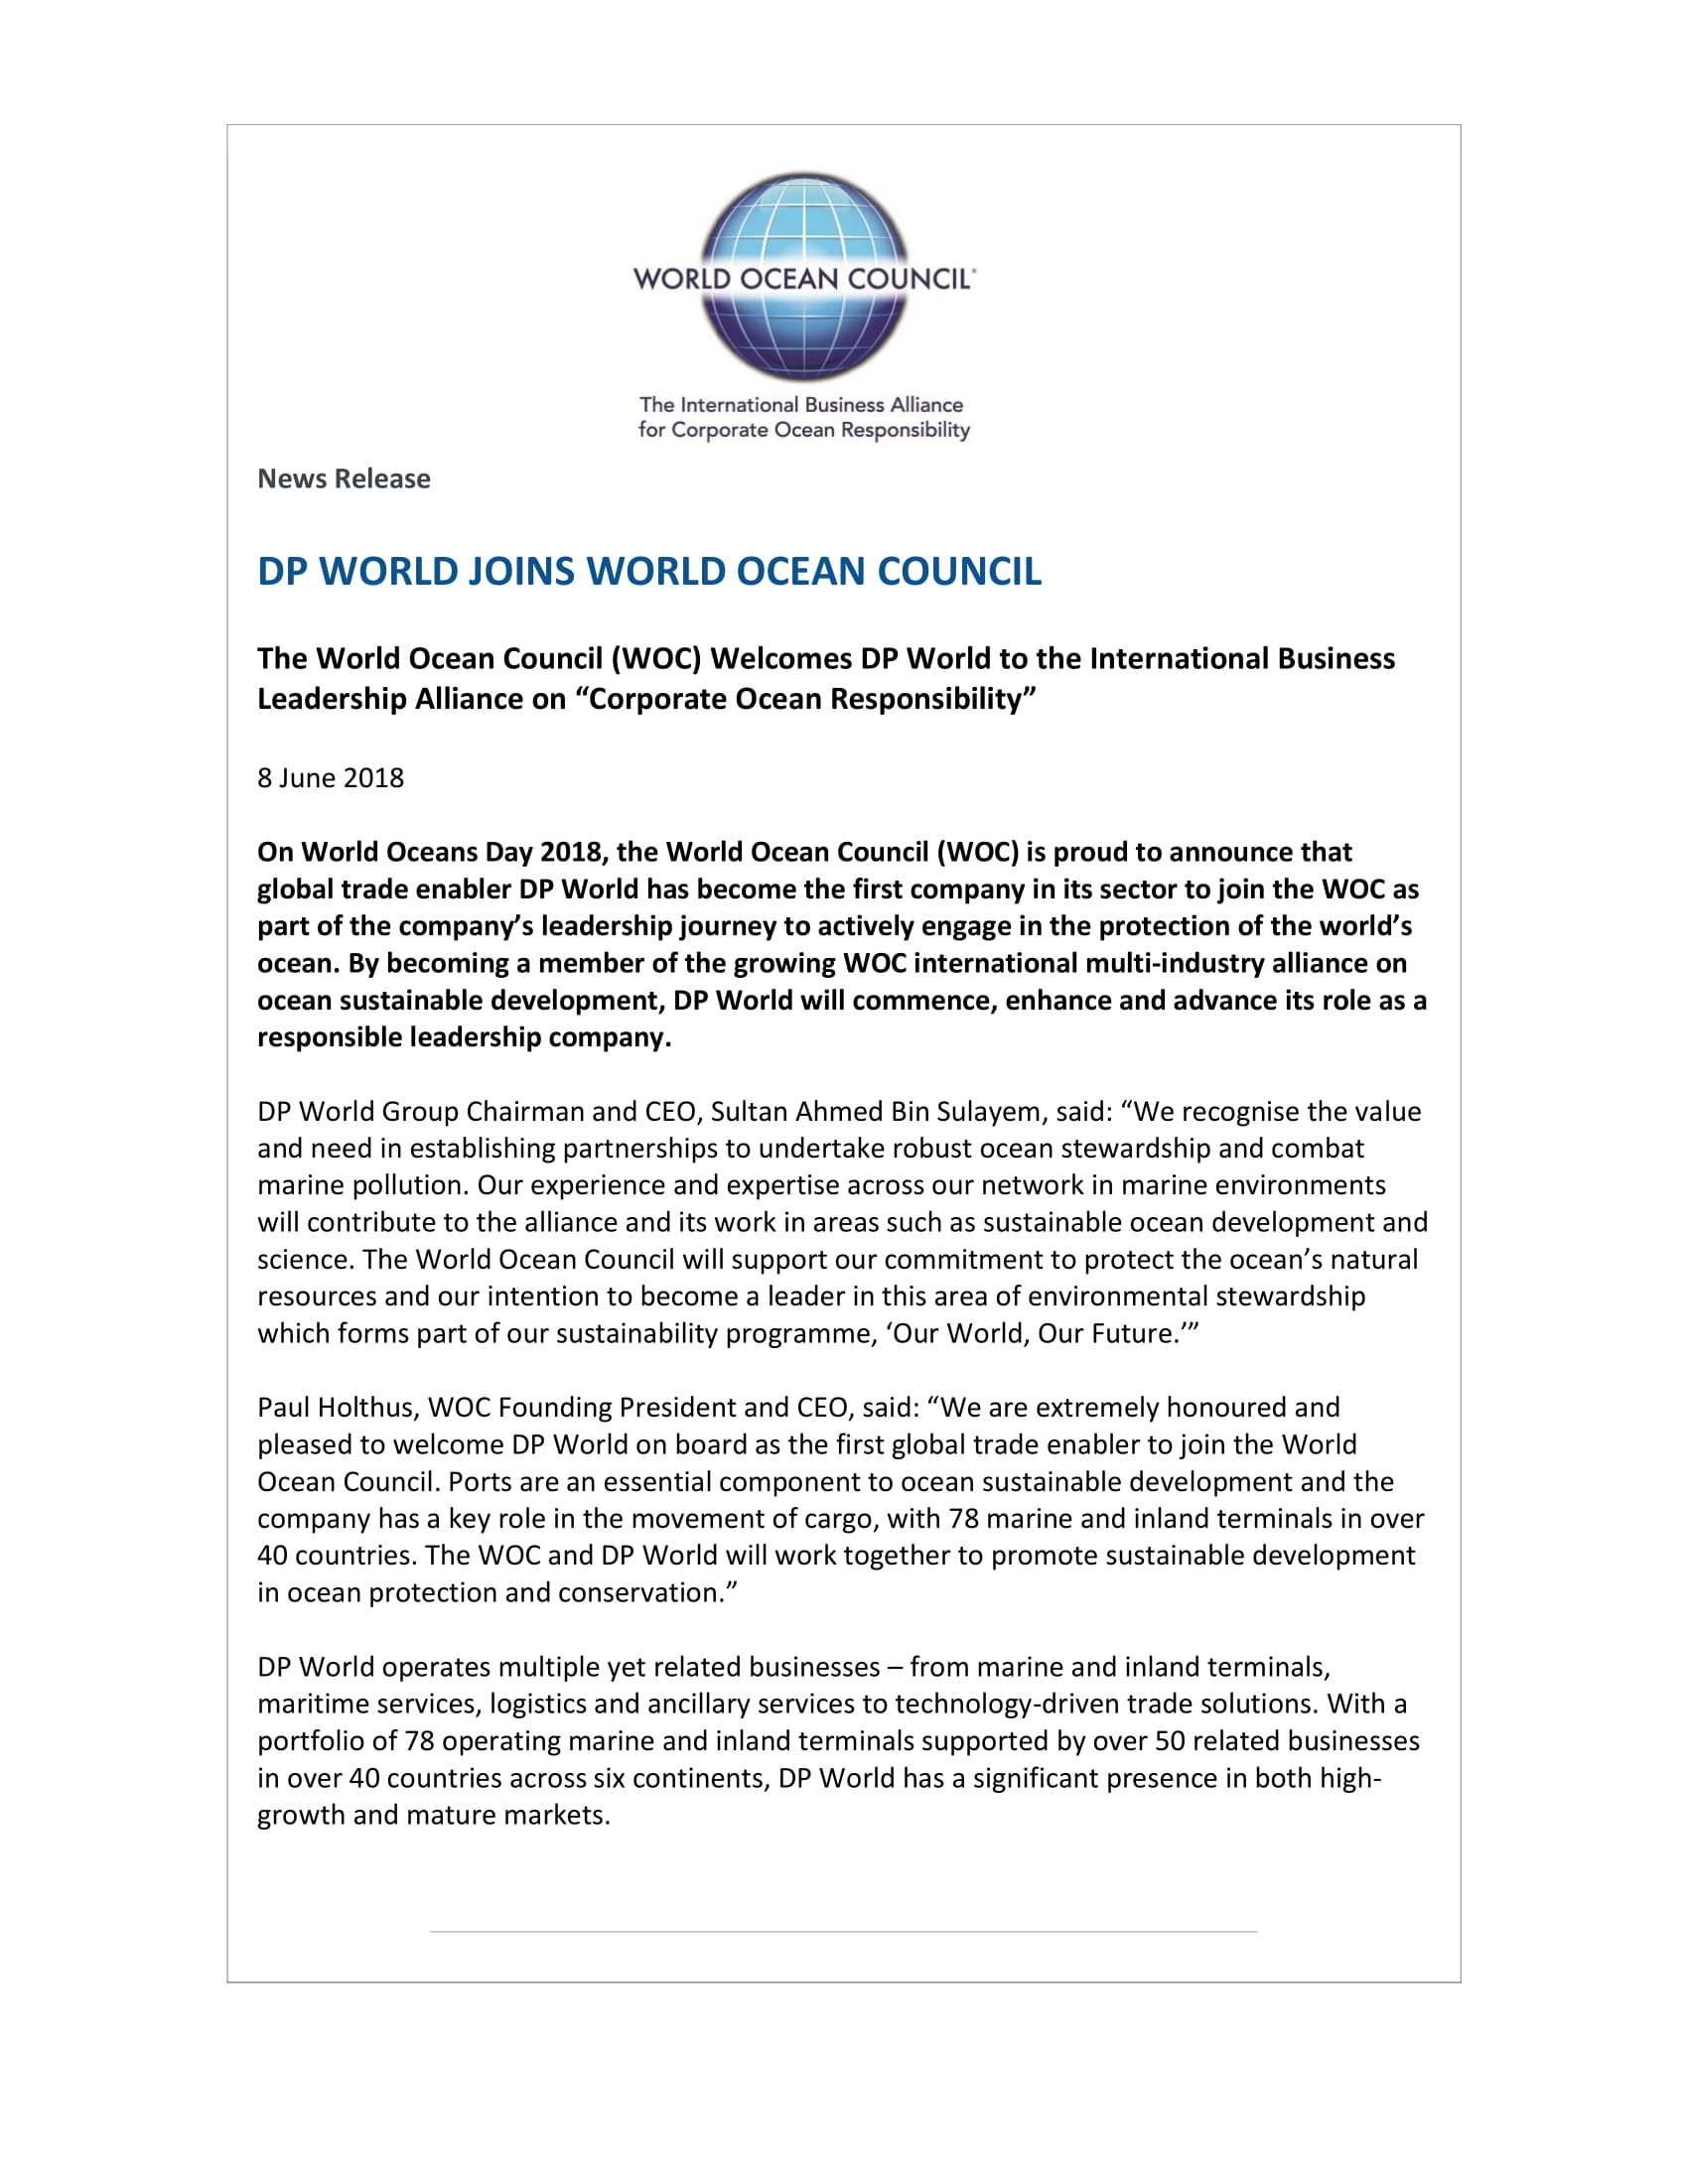 DP World Joins World Ocean Council 